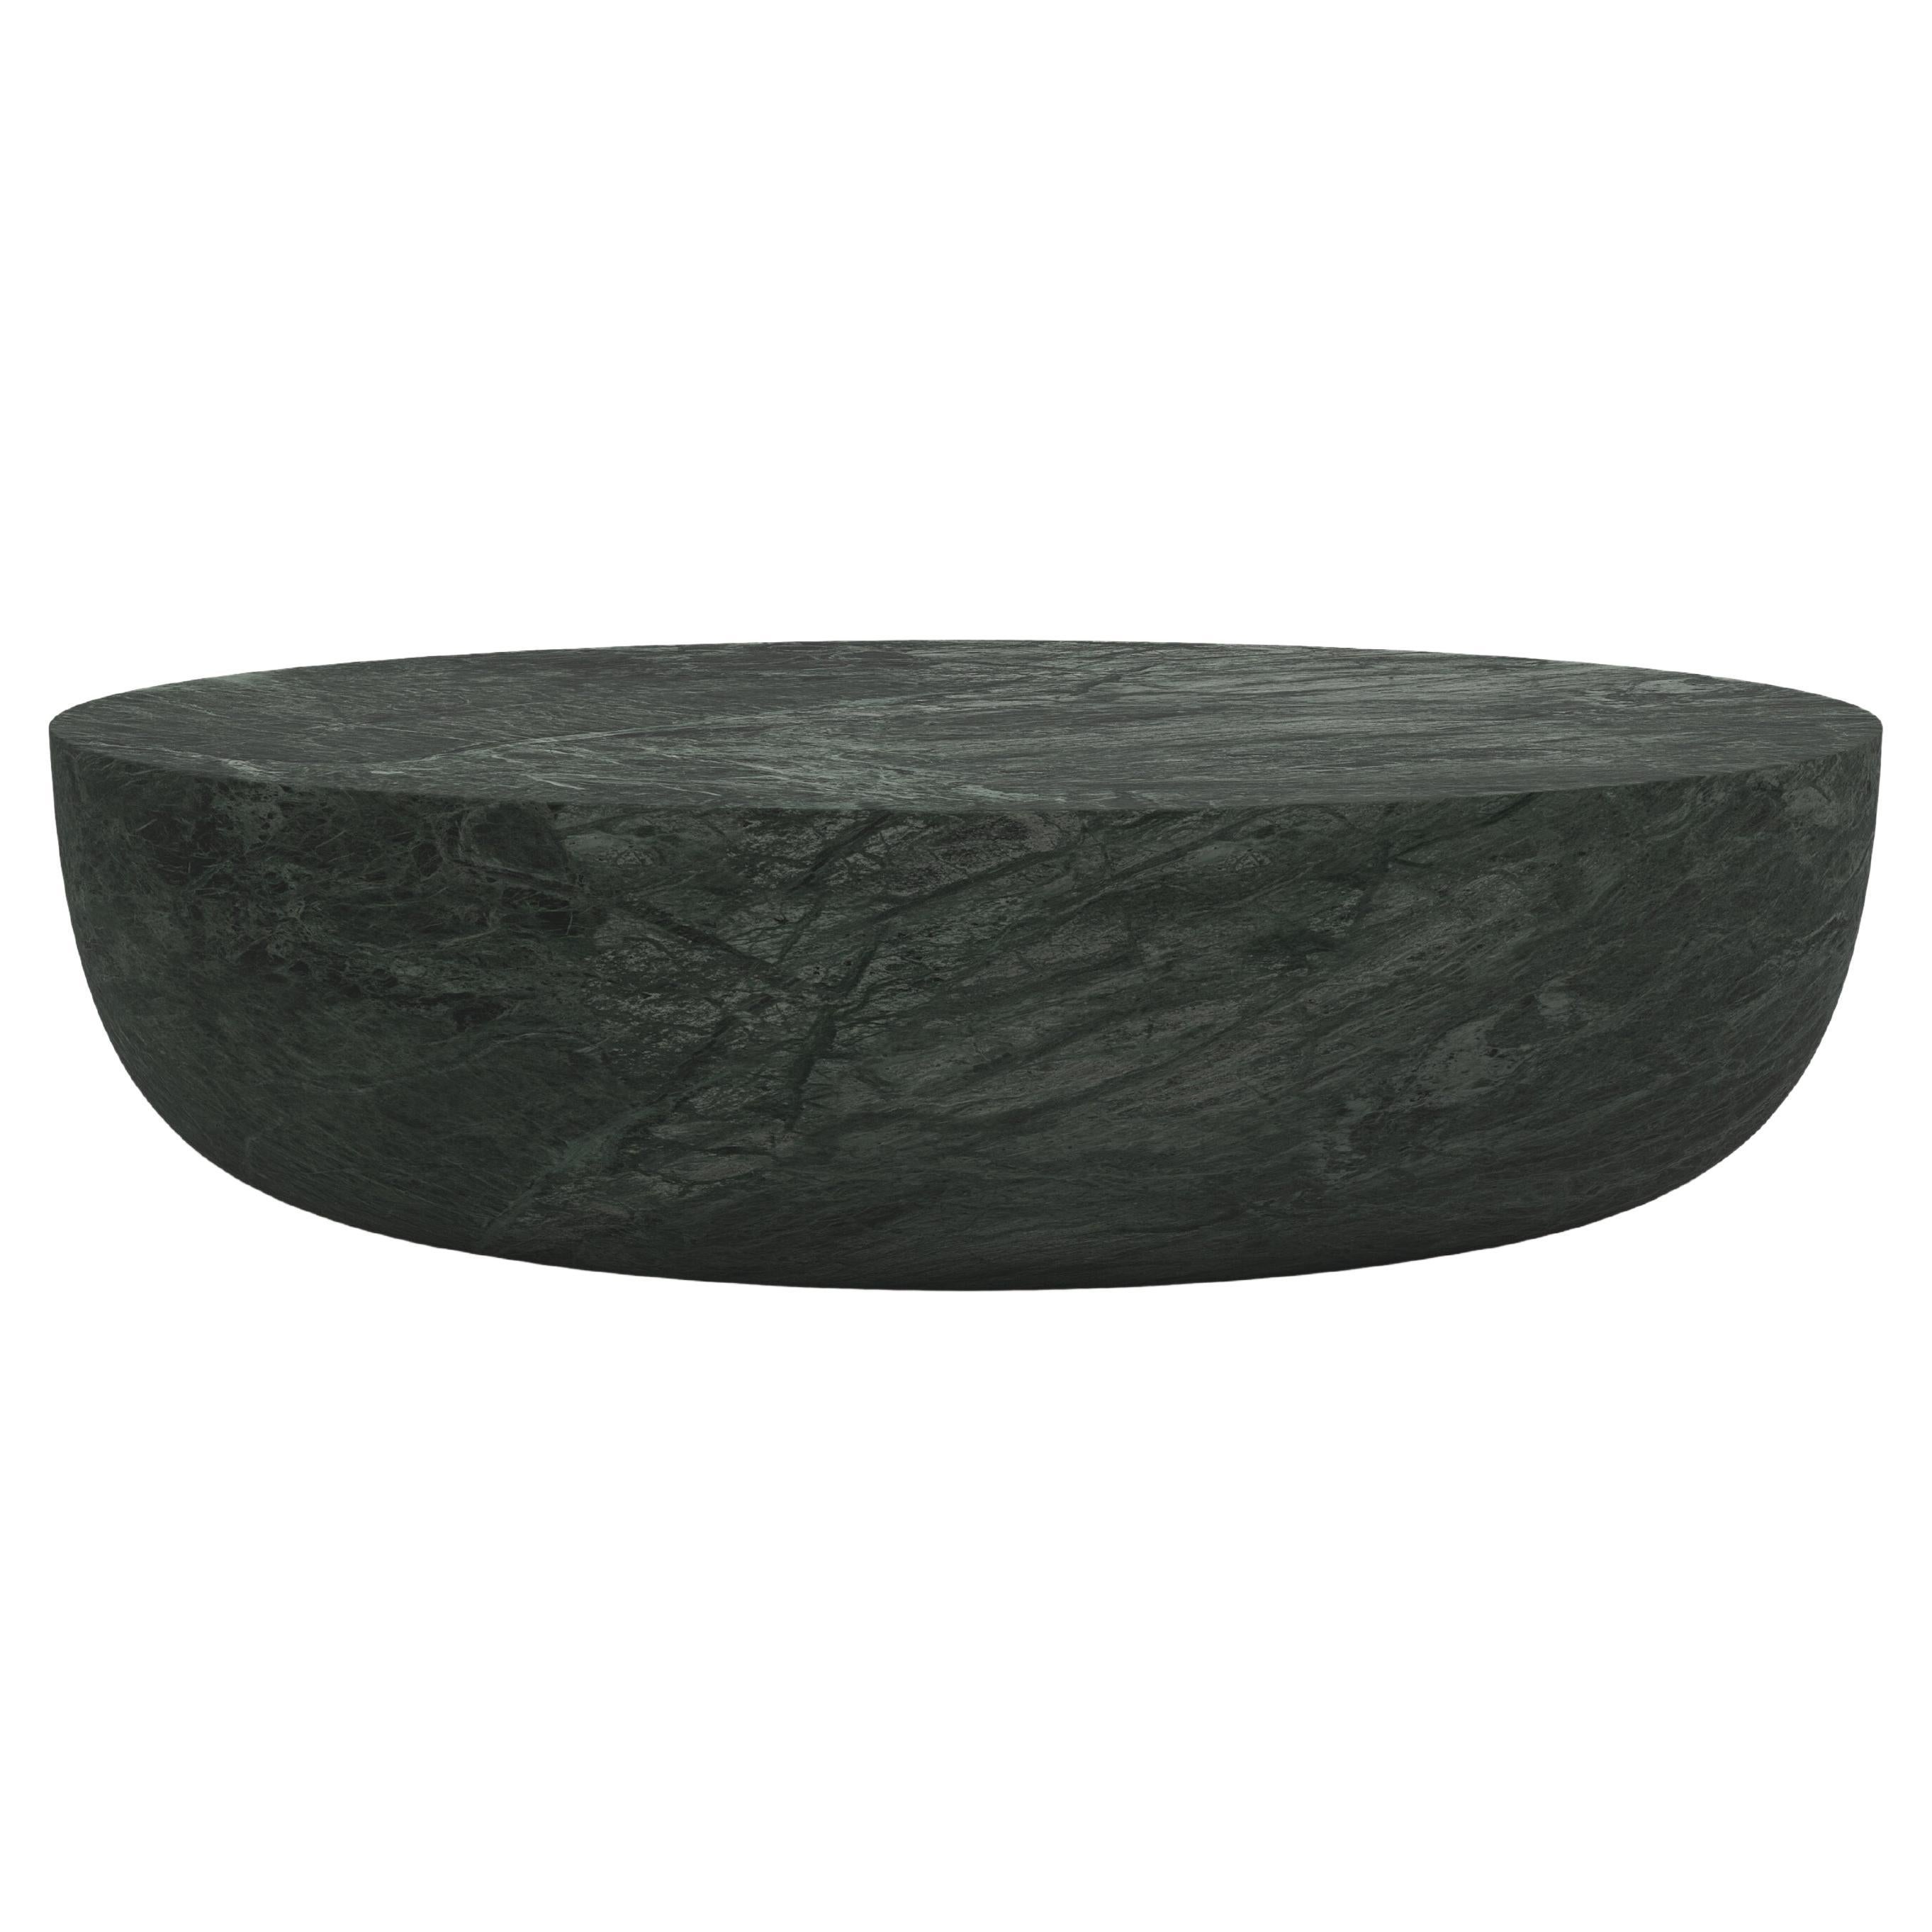 FORM(LA) Sfera Oval Coffee Table 60”L x 42”W x 16”H Verde Guatemala Marble For Sale